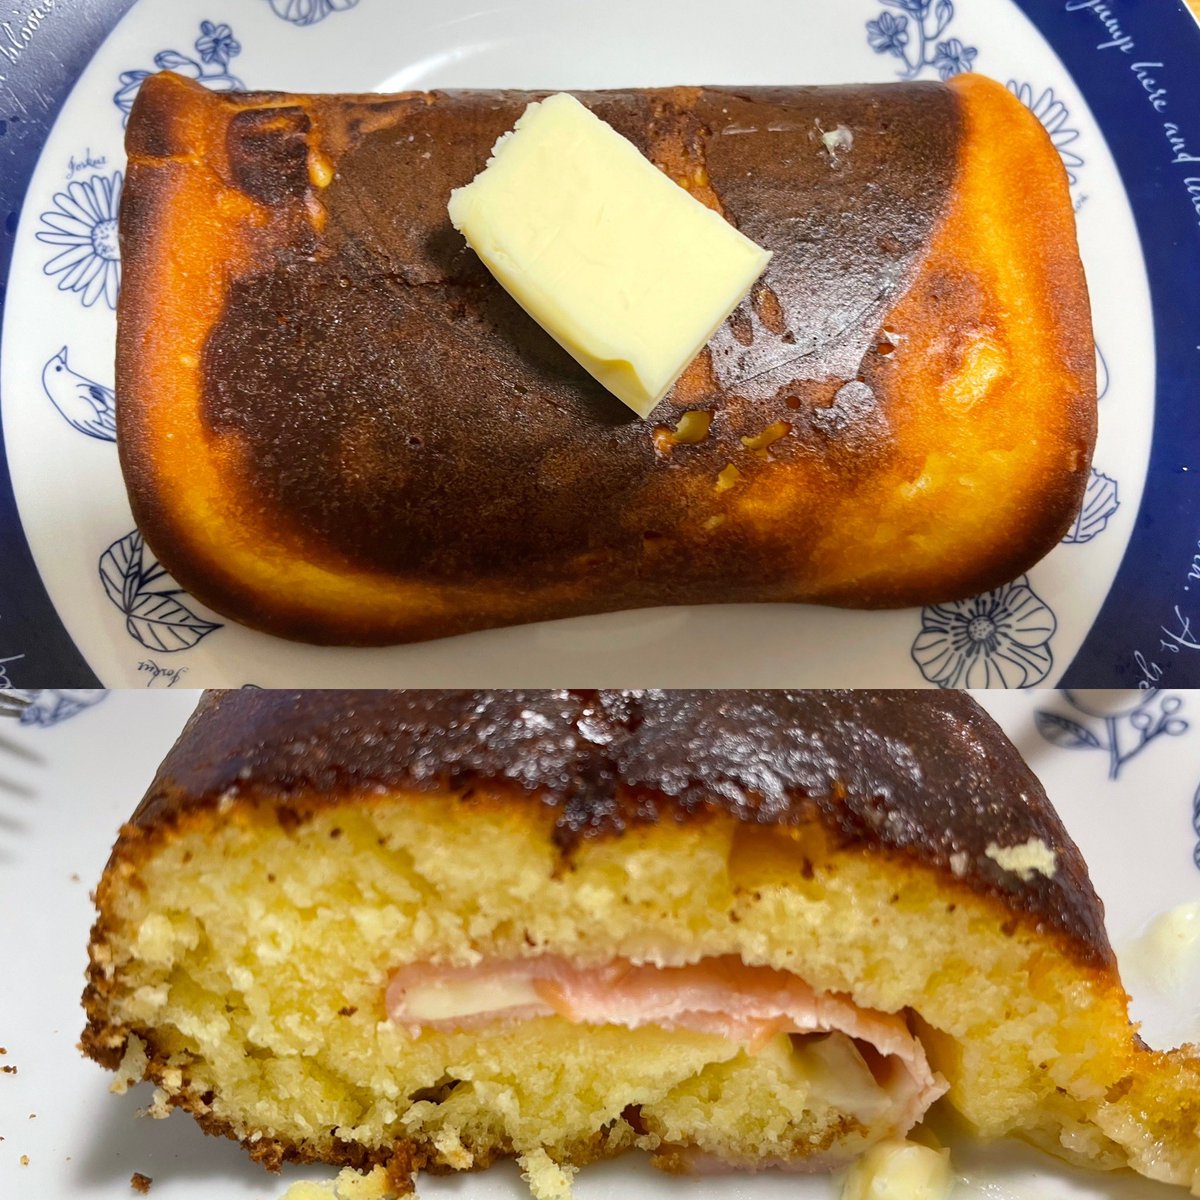 朝ごはん🍽😋 ☘️ハム&チーズホットケーキアレンジ パンケーキ真っ黒に焦げたって ありのまま投稿😅 良いんだよ、旨いから(^_^;)